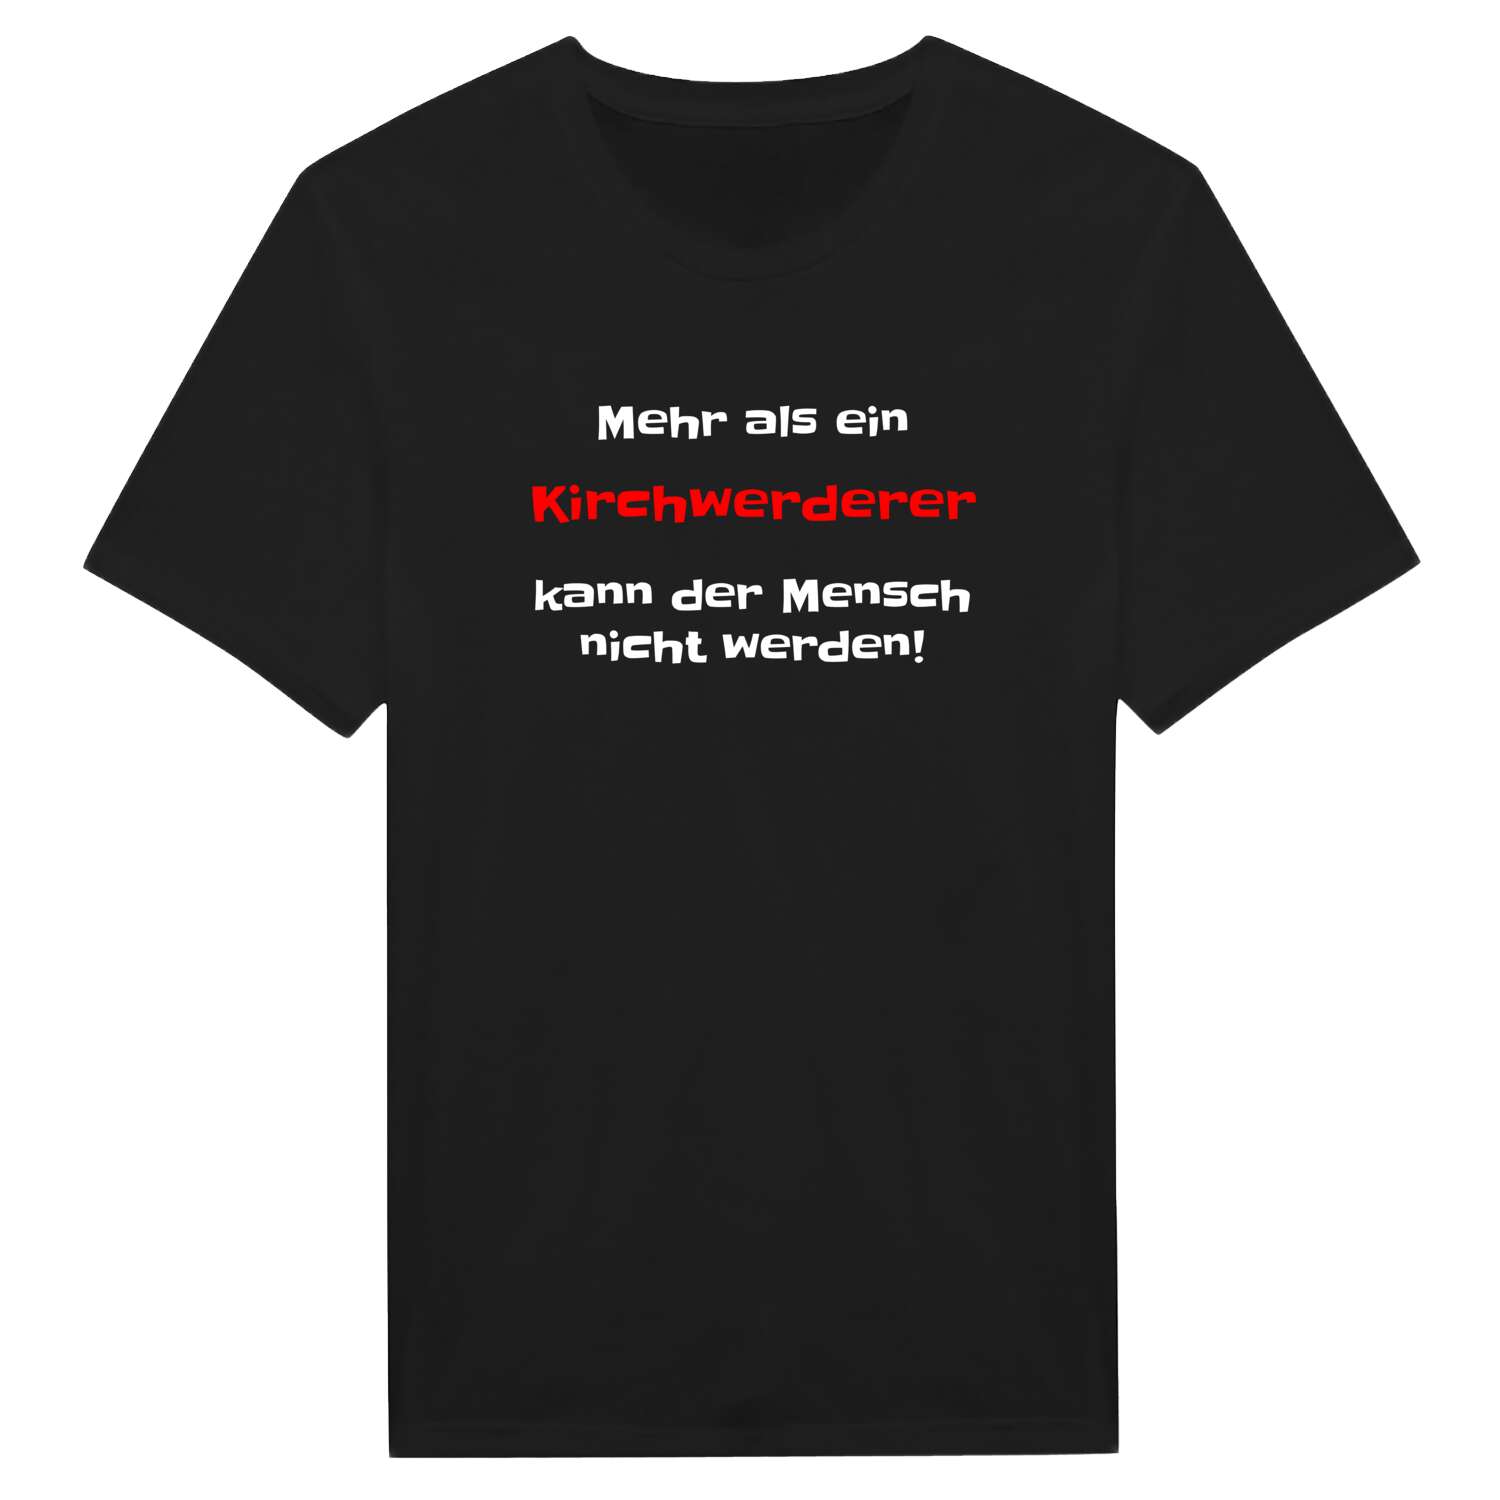 Kirchwerder T-Shirt »Mehr als ein«